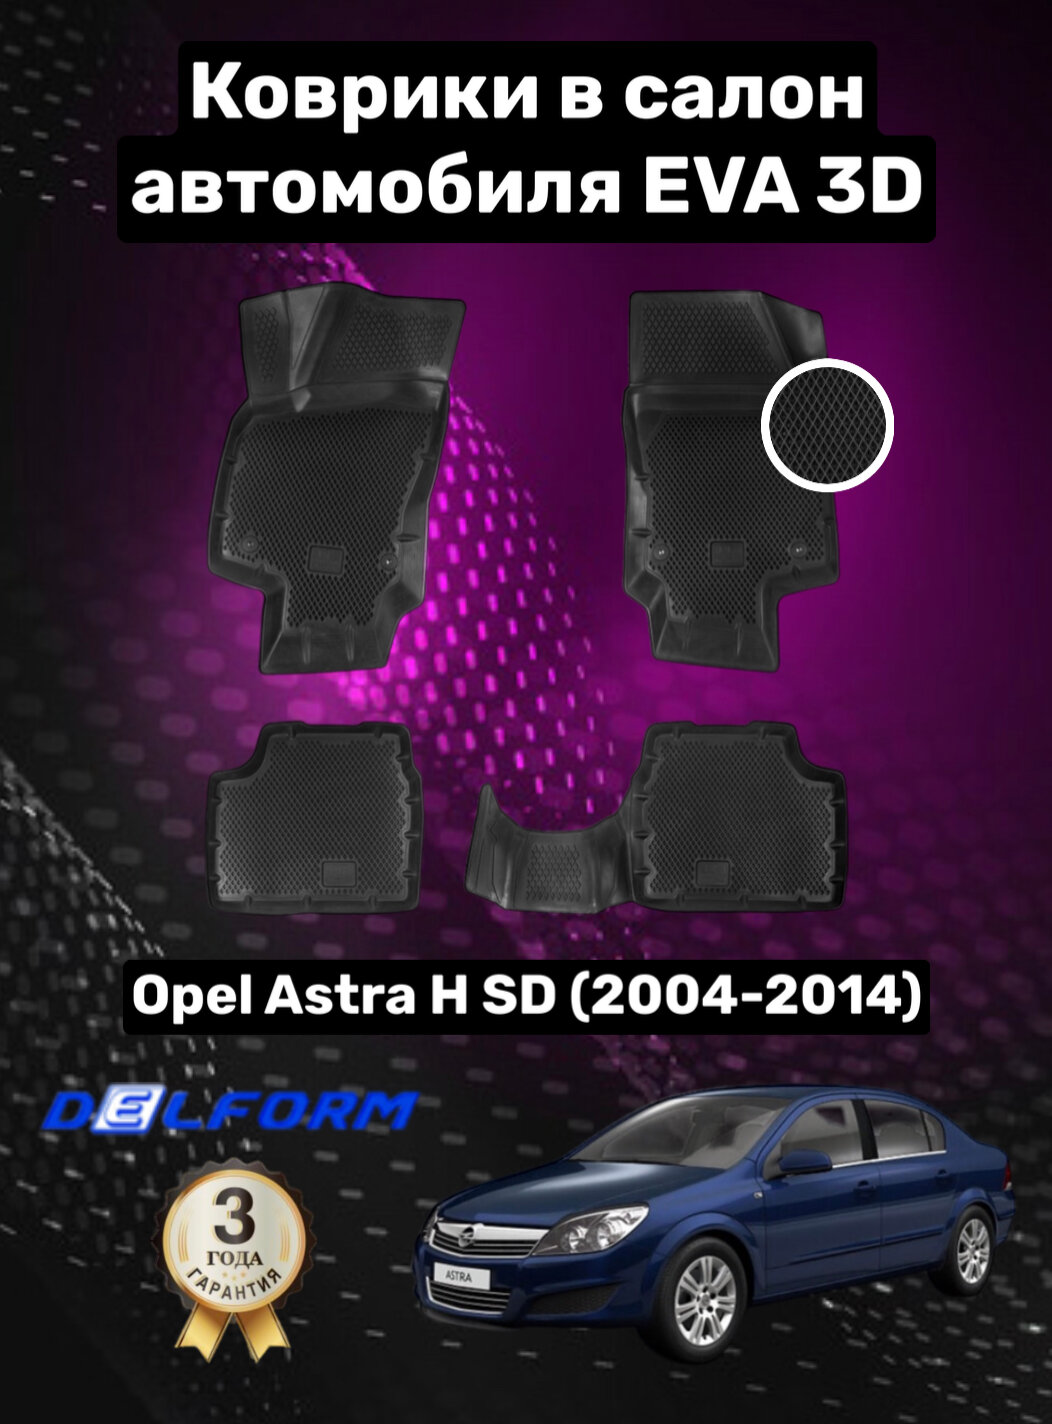 Эва/Eva/Ева коврики c бортами Опель Астра Н седан (2004-2014)/Opel Astra H SD DELFORM 3D Standart ("EVA 3D") cалон